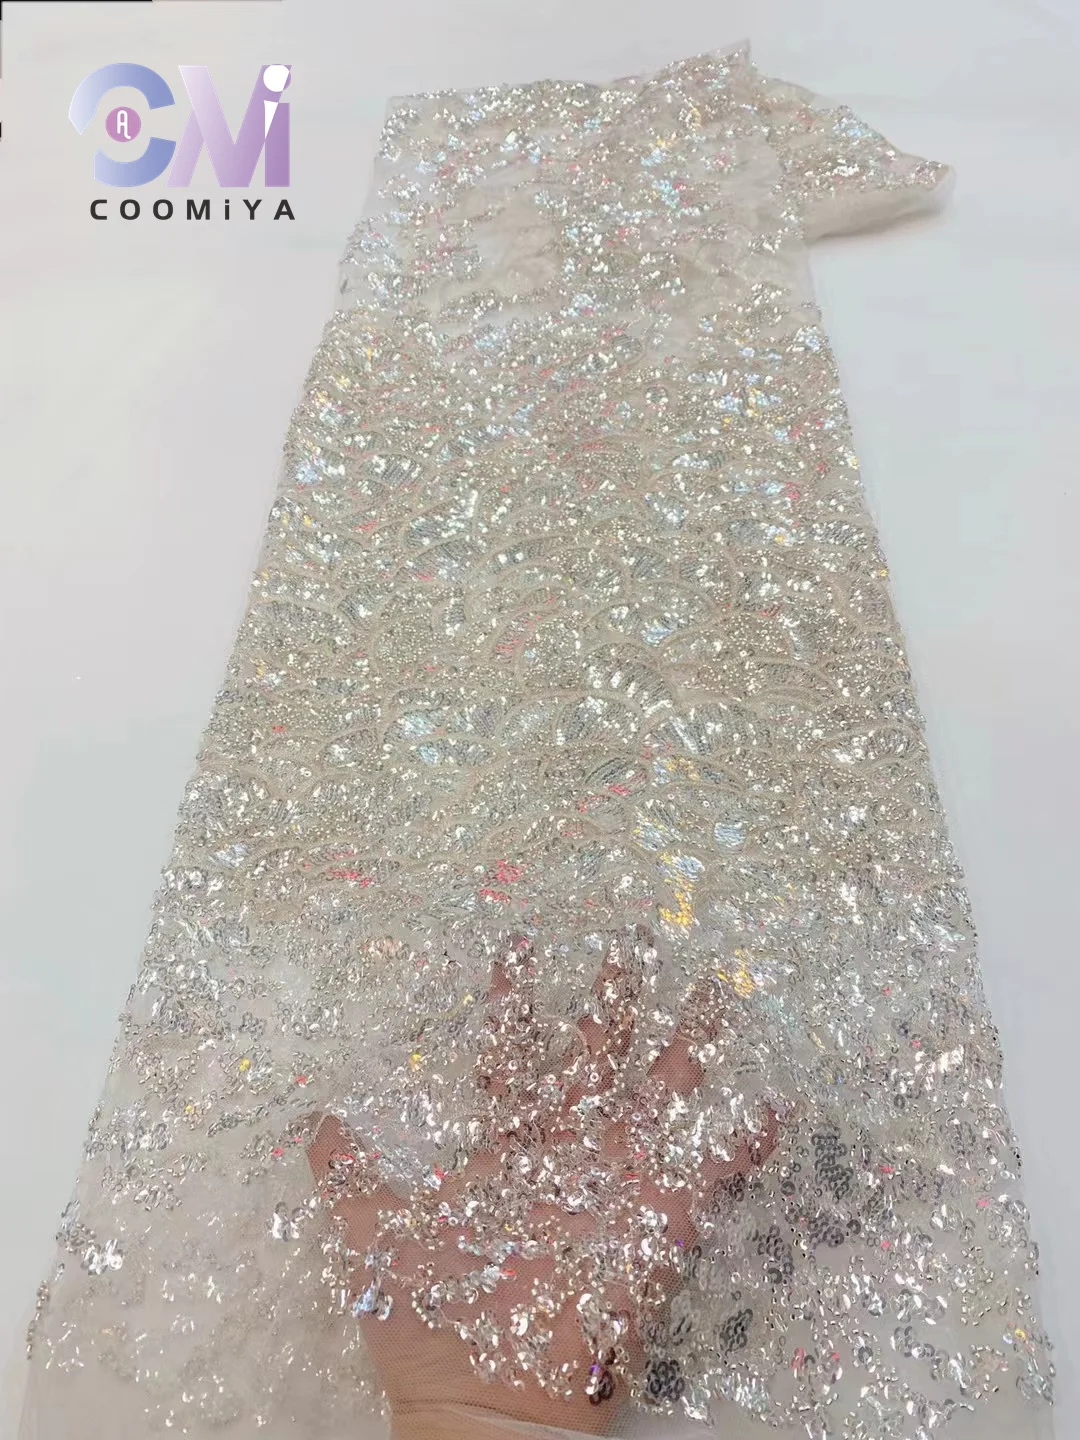 Çiçekli Net Dantel ile Yüksek Kalite Boncuk Düğün Töreni Elbise için Kadın Serisi Nakış Lüks En Kaliteli Kumaş